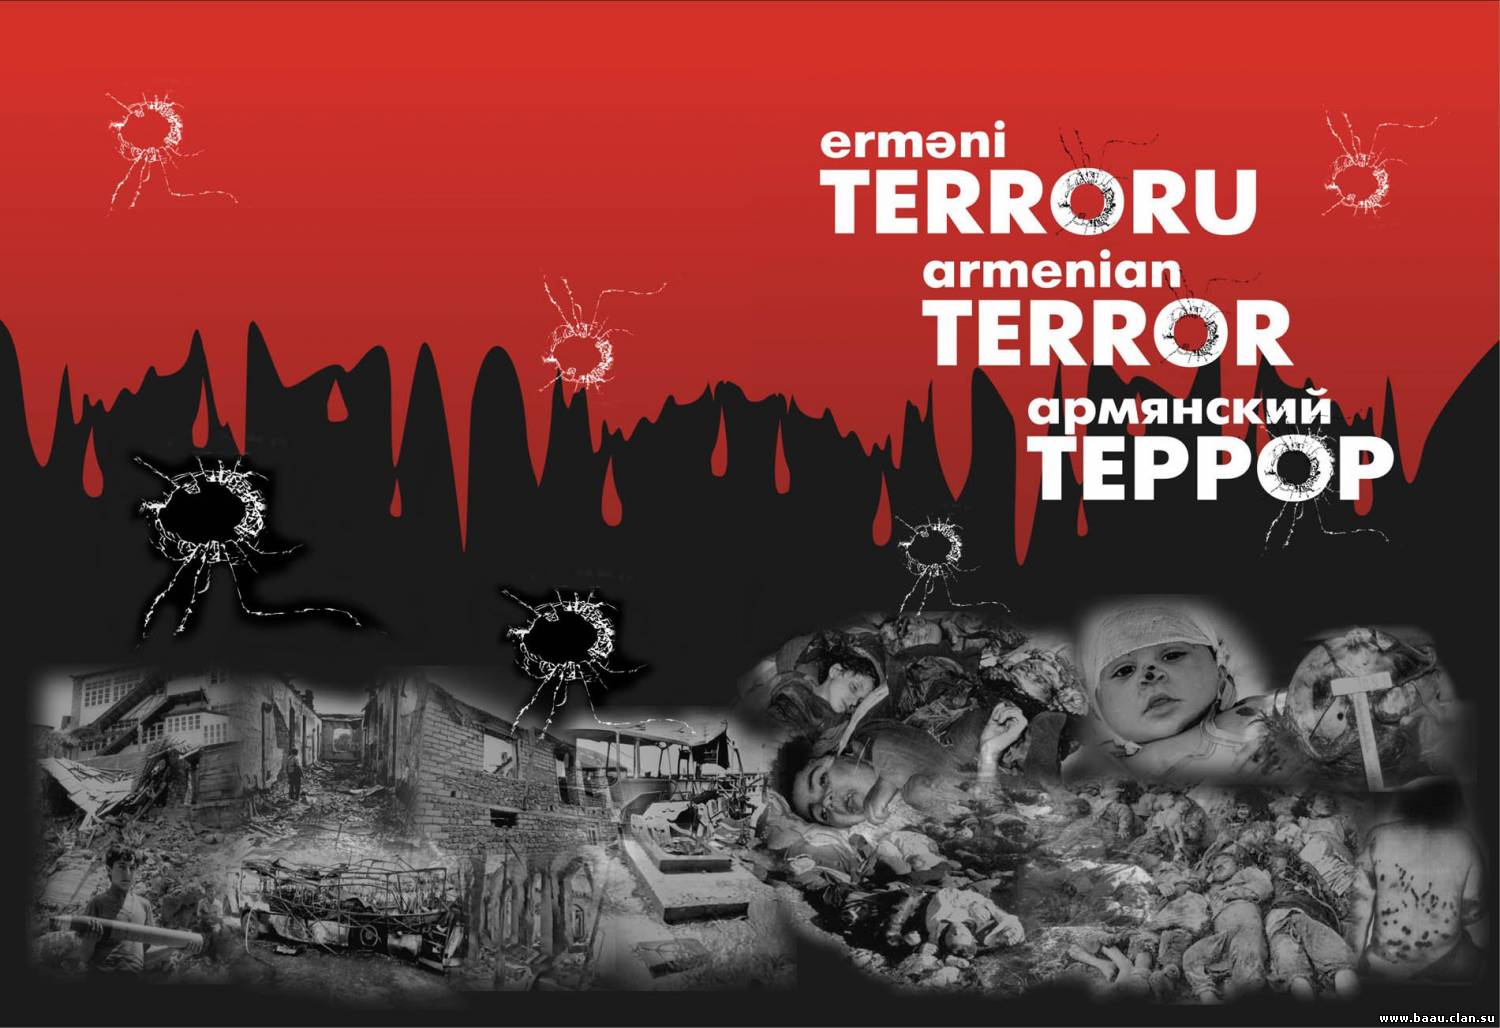 Erməni Terroru